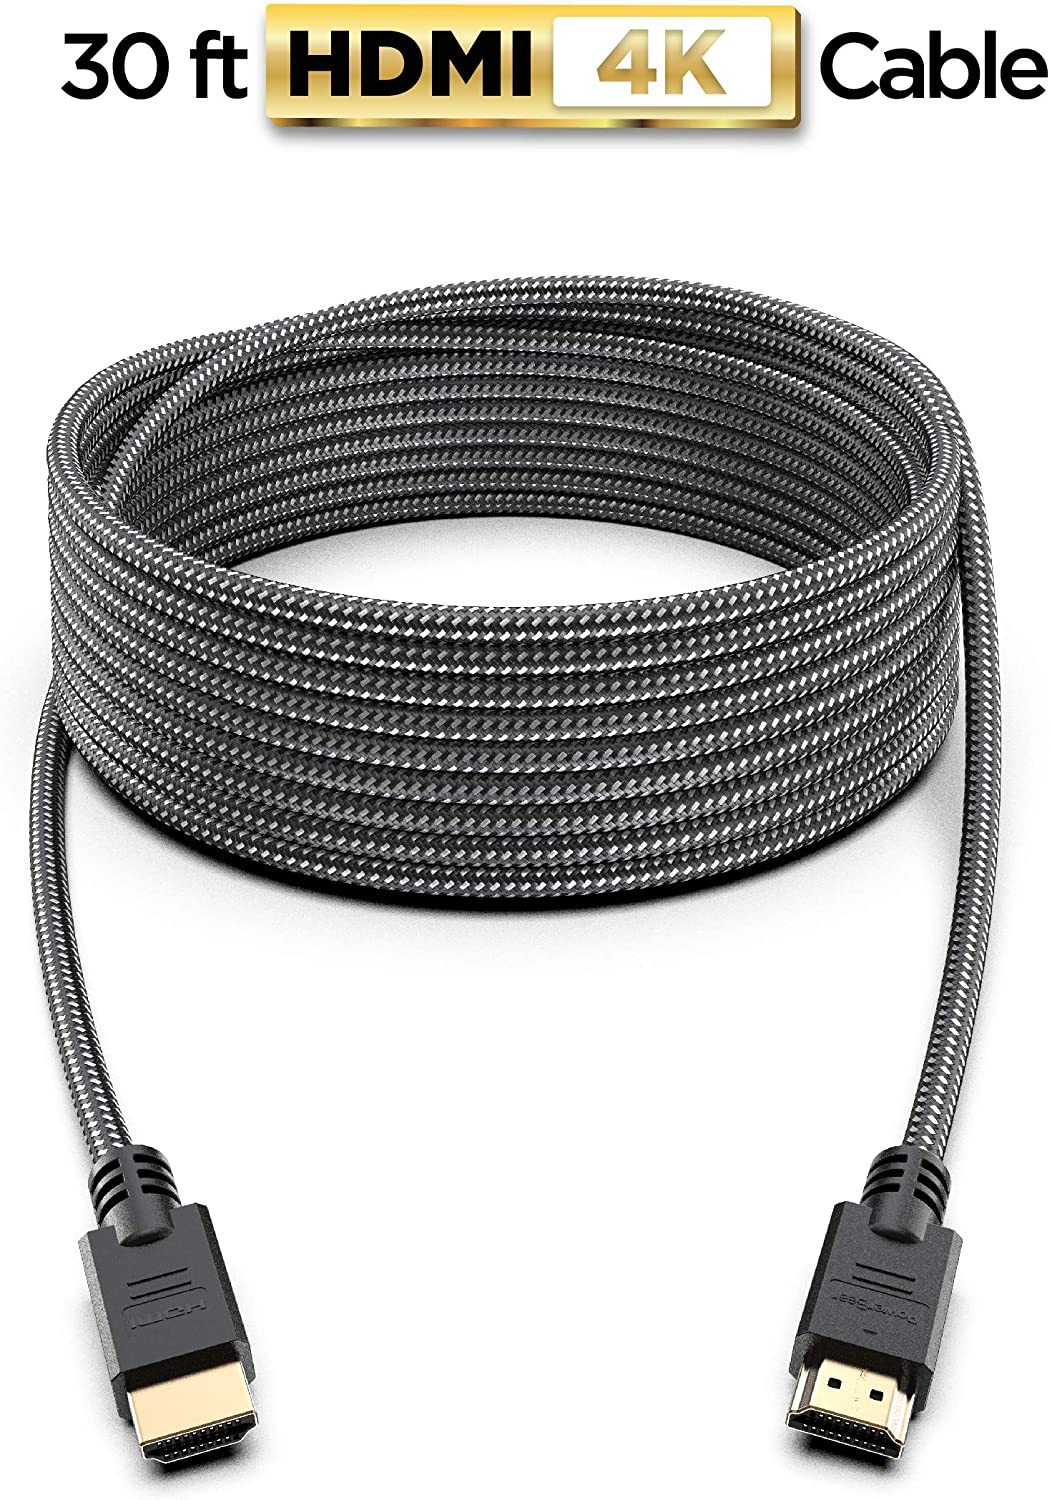 PowerBear 4K Cable HDMI de 30 pies | Conectores de nailon trenzado y oro de alta velocidad